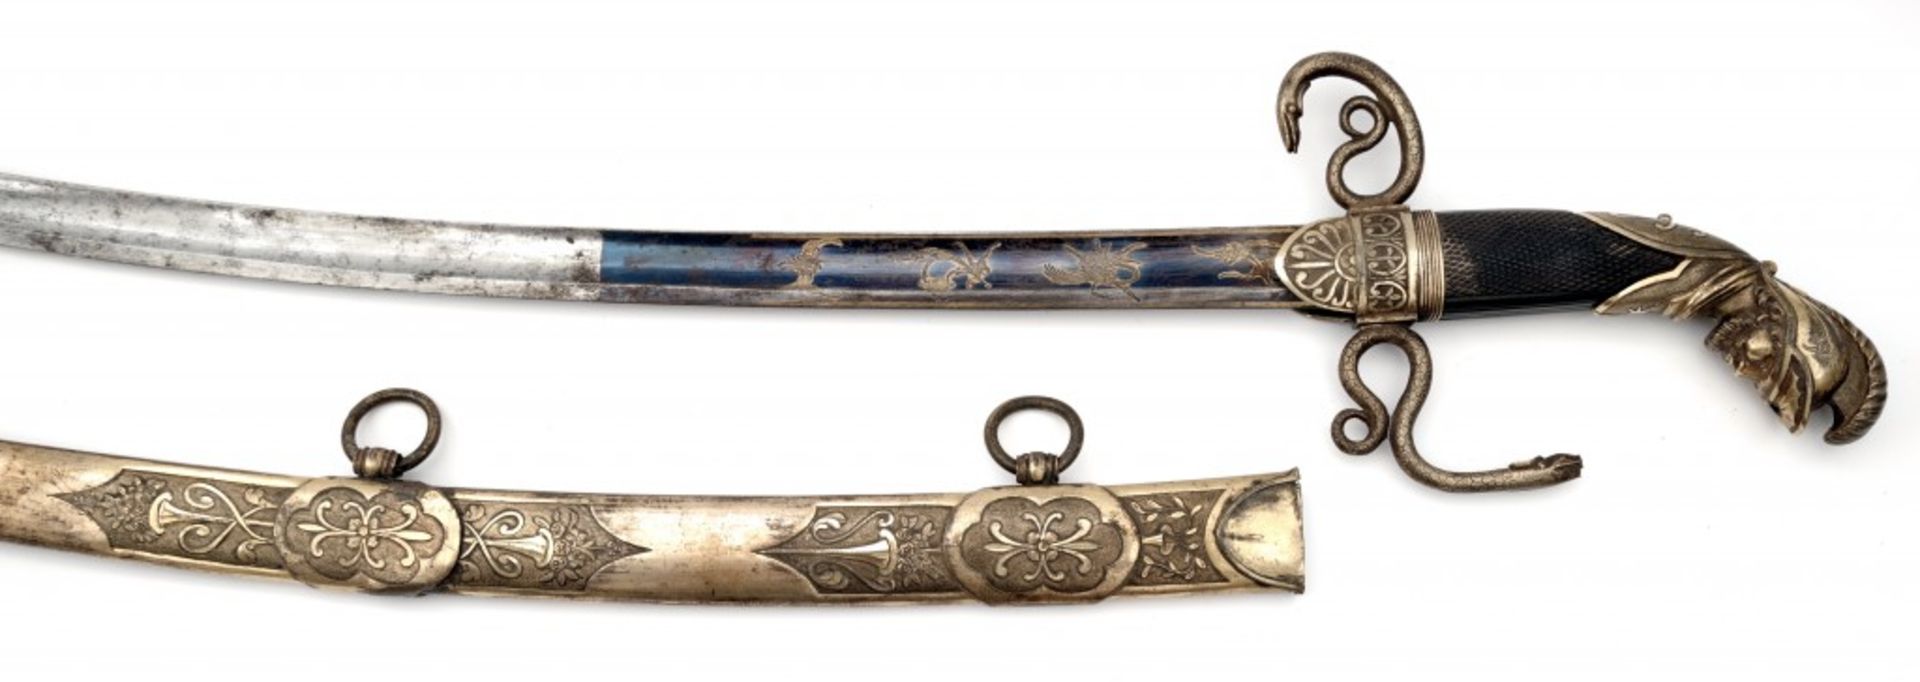 A Luxury Sabre (Presentation Sword)